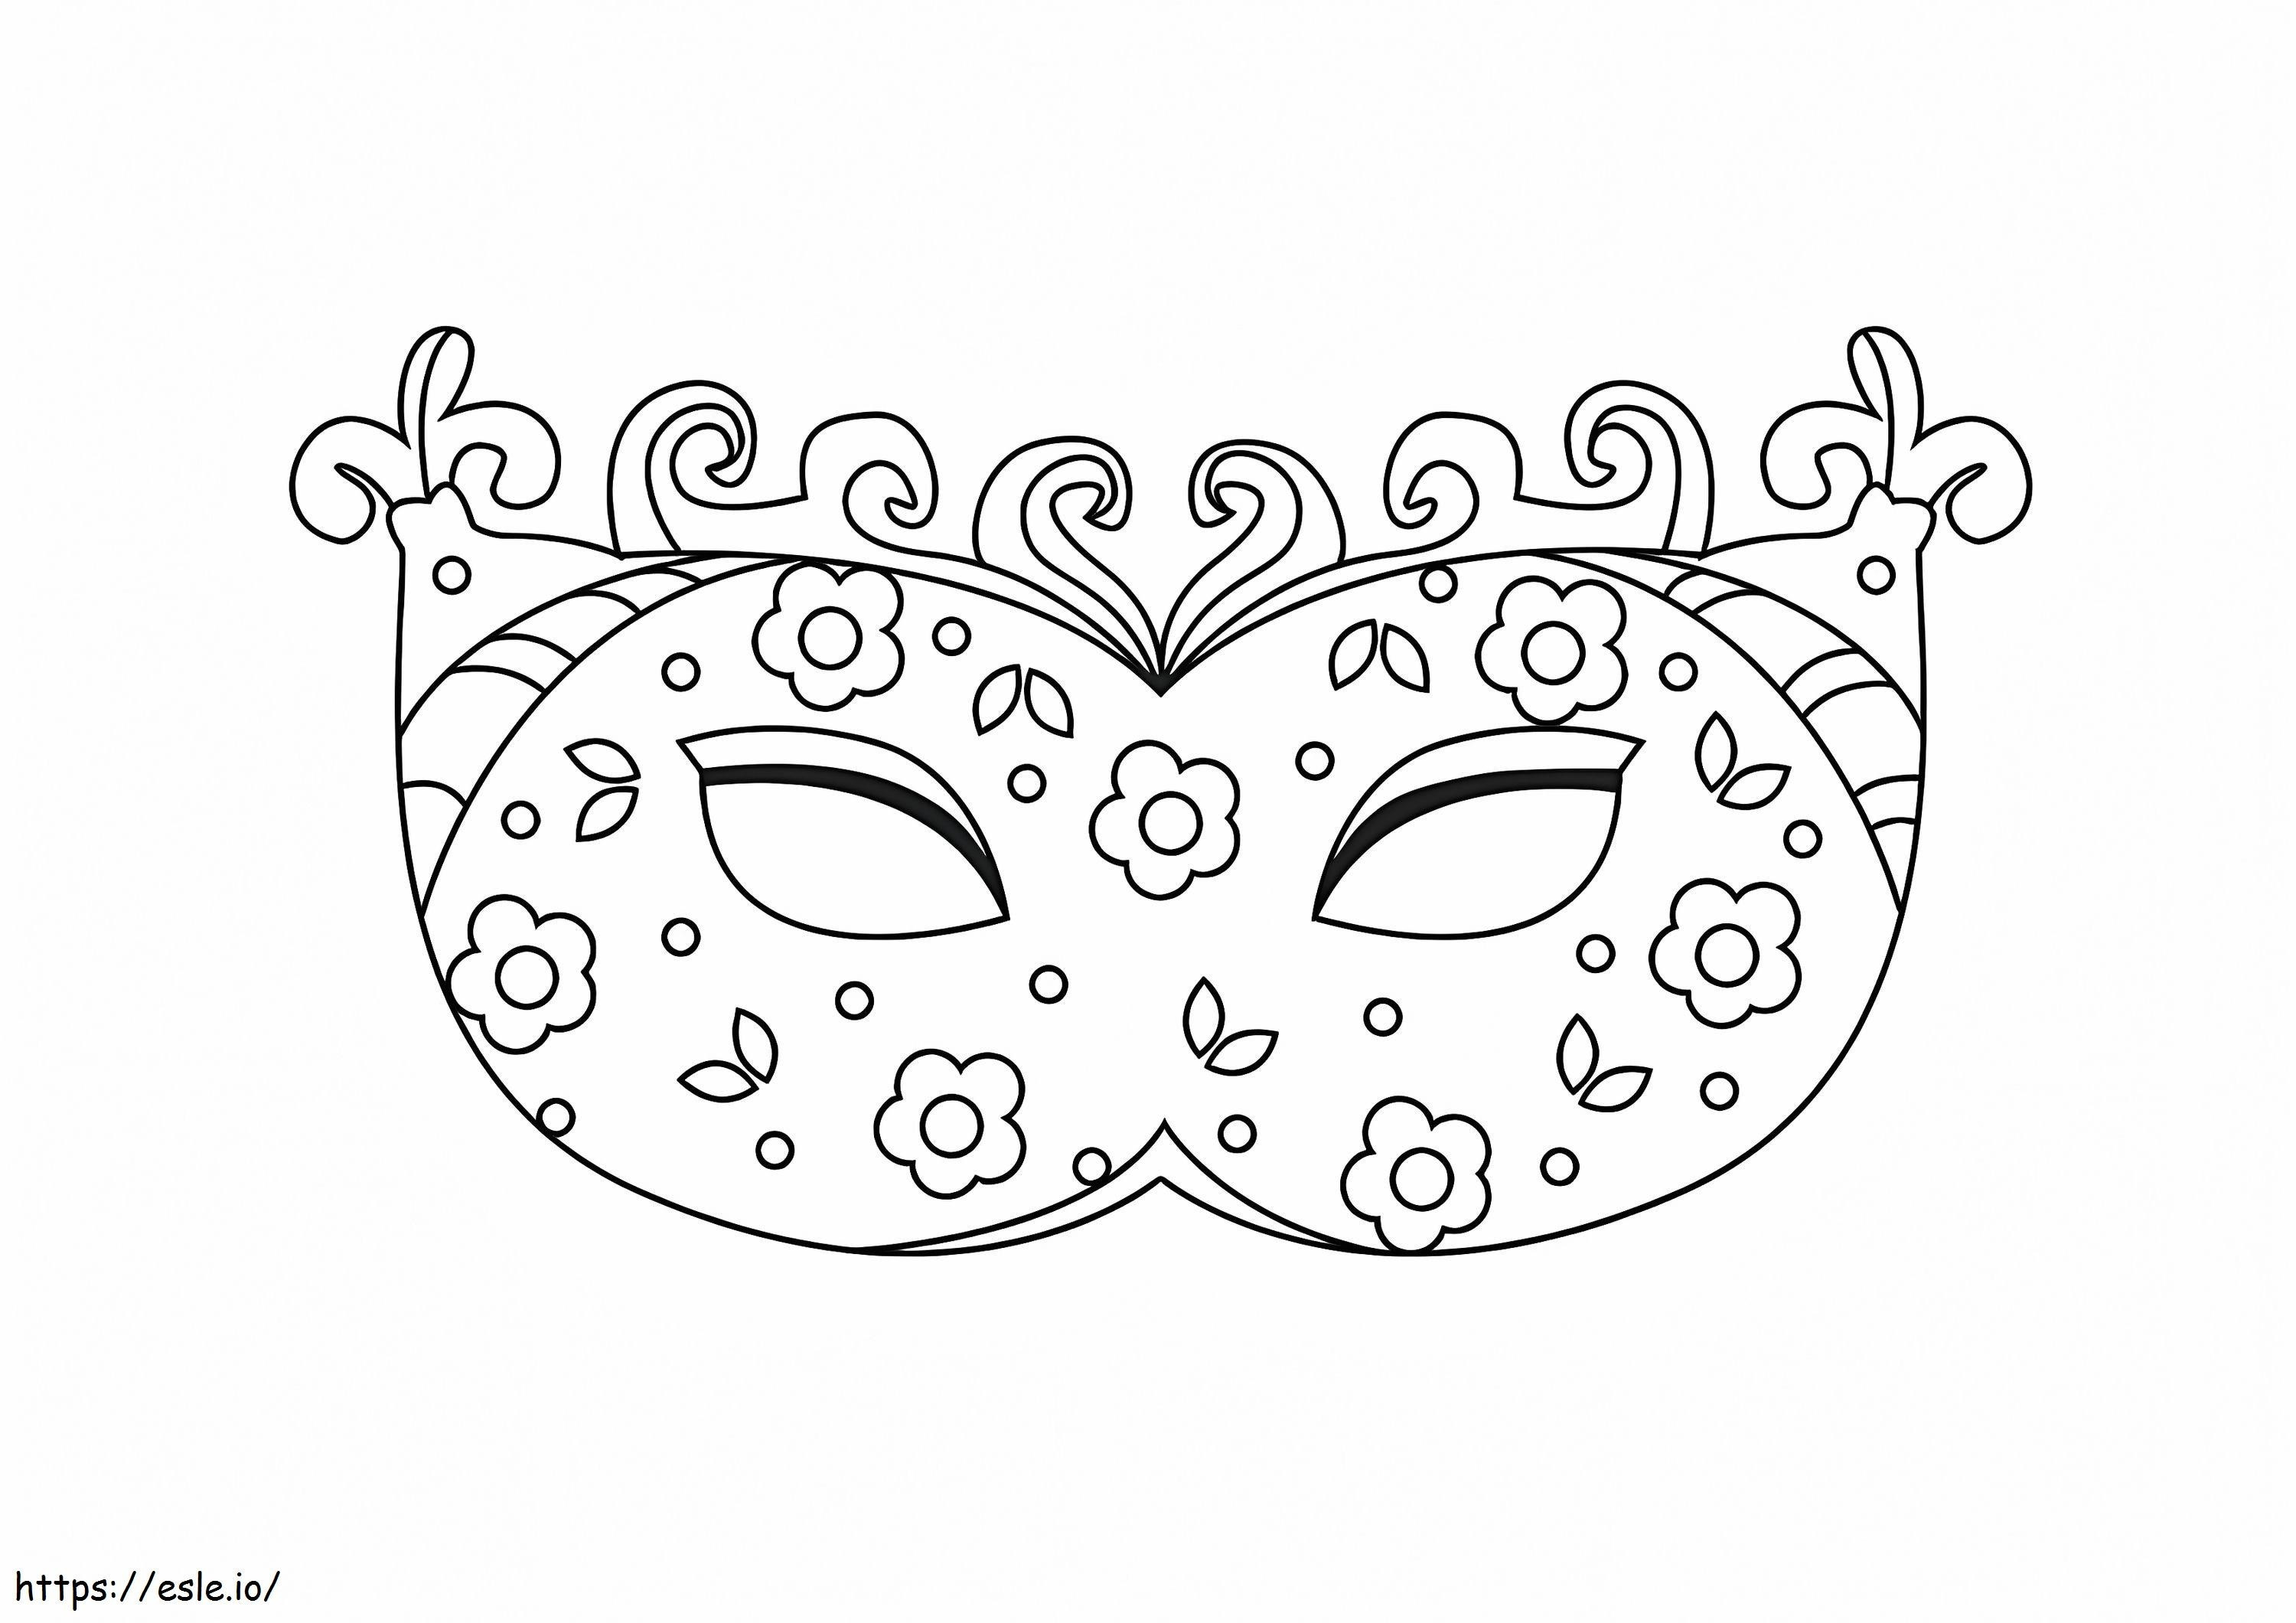 Karnawałowa Maska Z Małymi Kwiatami kolorowanka